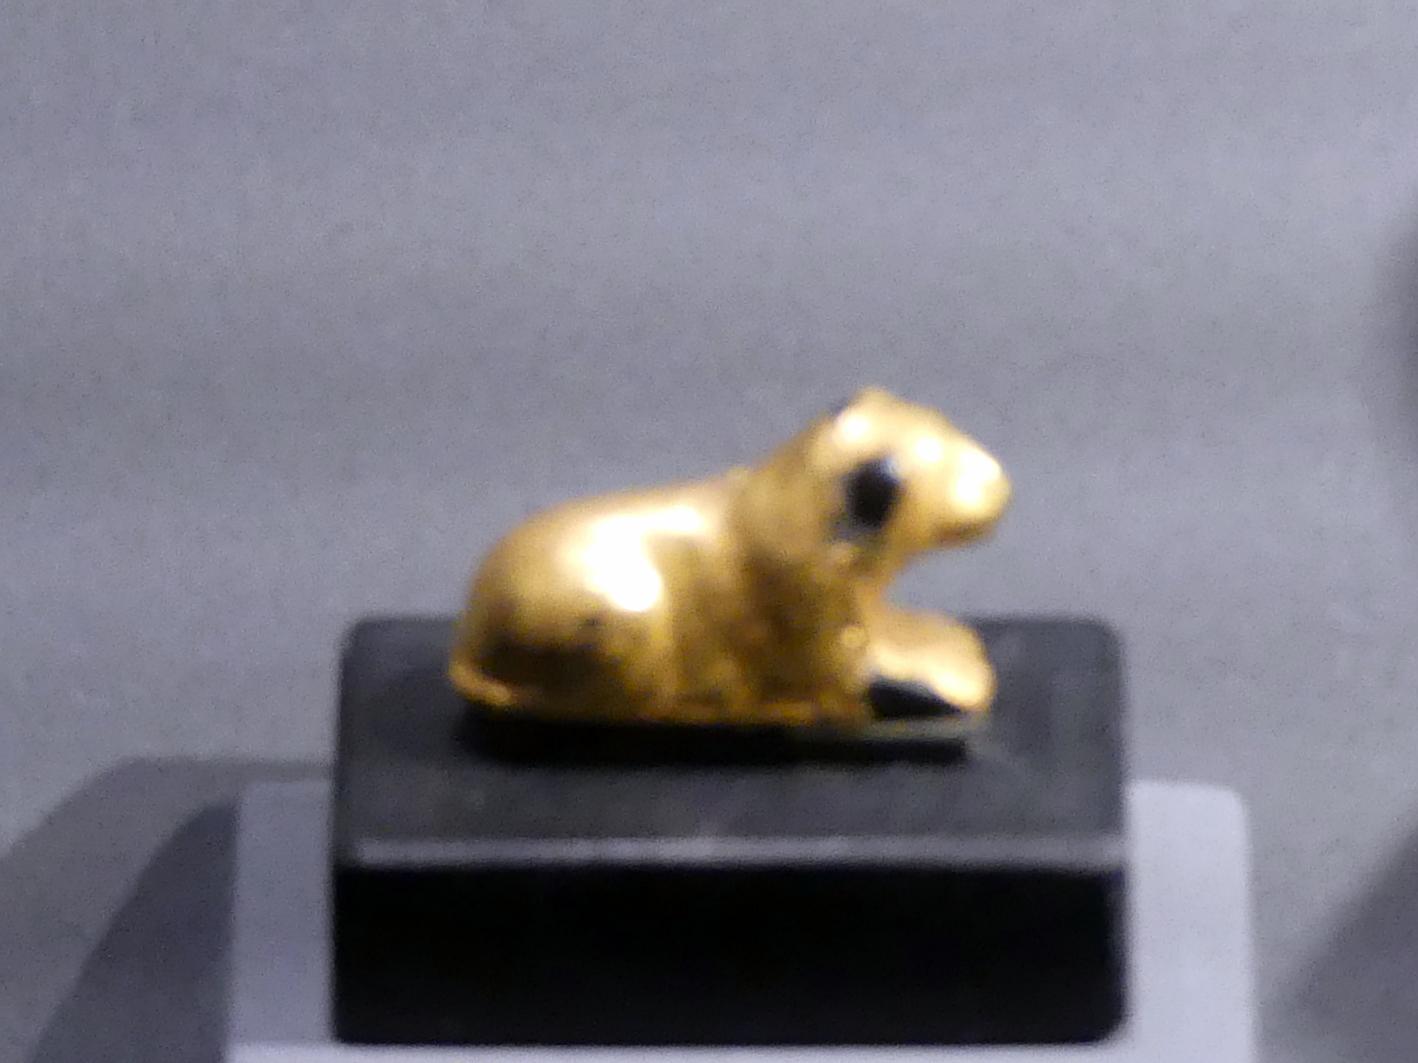 Liegender Löwe, 18. Dynastie, Undatiert, 1450 v. Chr.